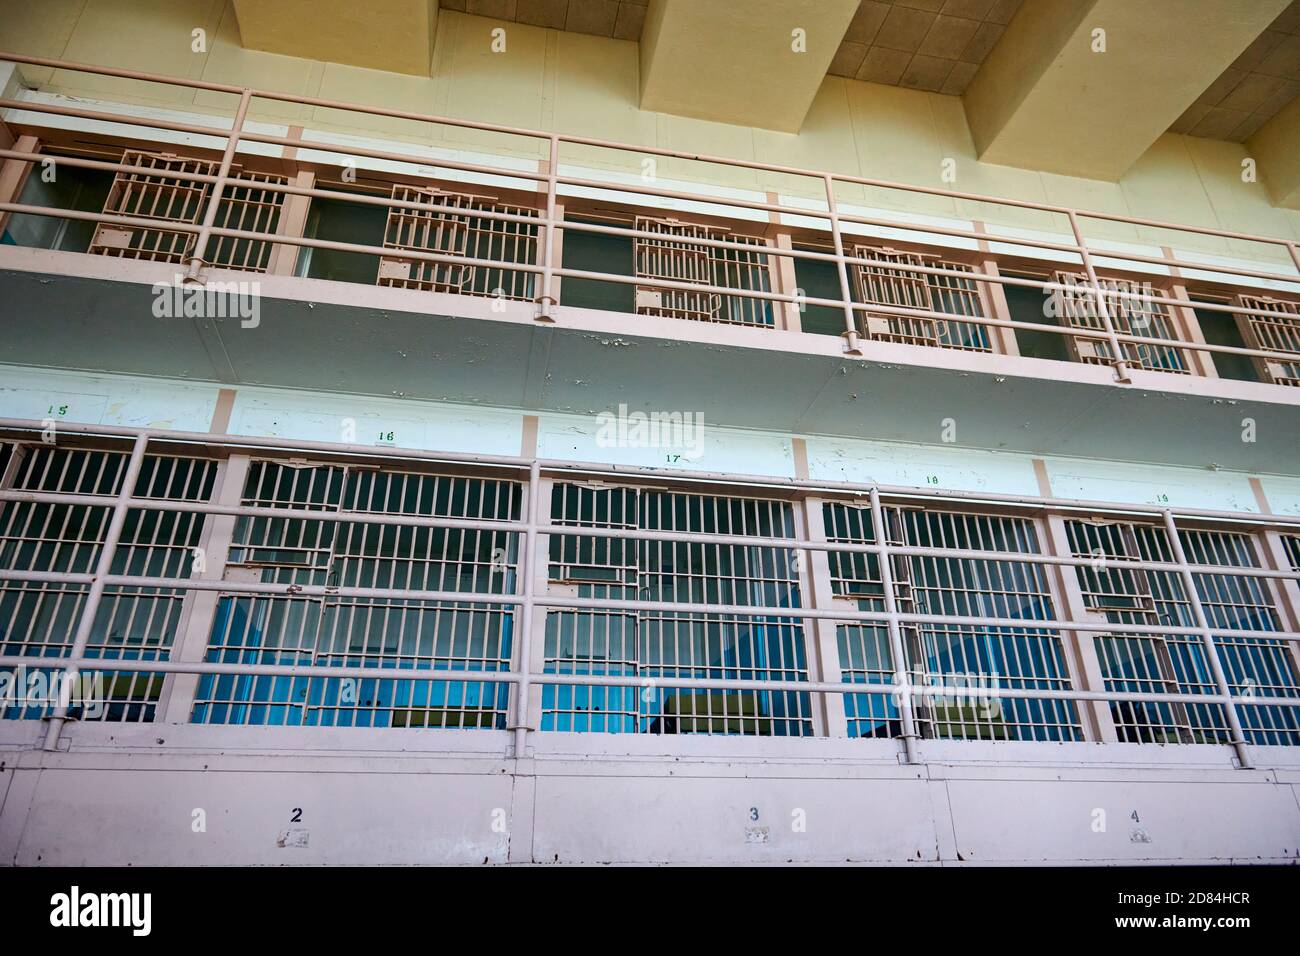 Innenfoto des Alcatraz Gefängnisses, San Francisco, Kalifornien, USA Stockfoto